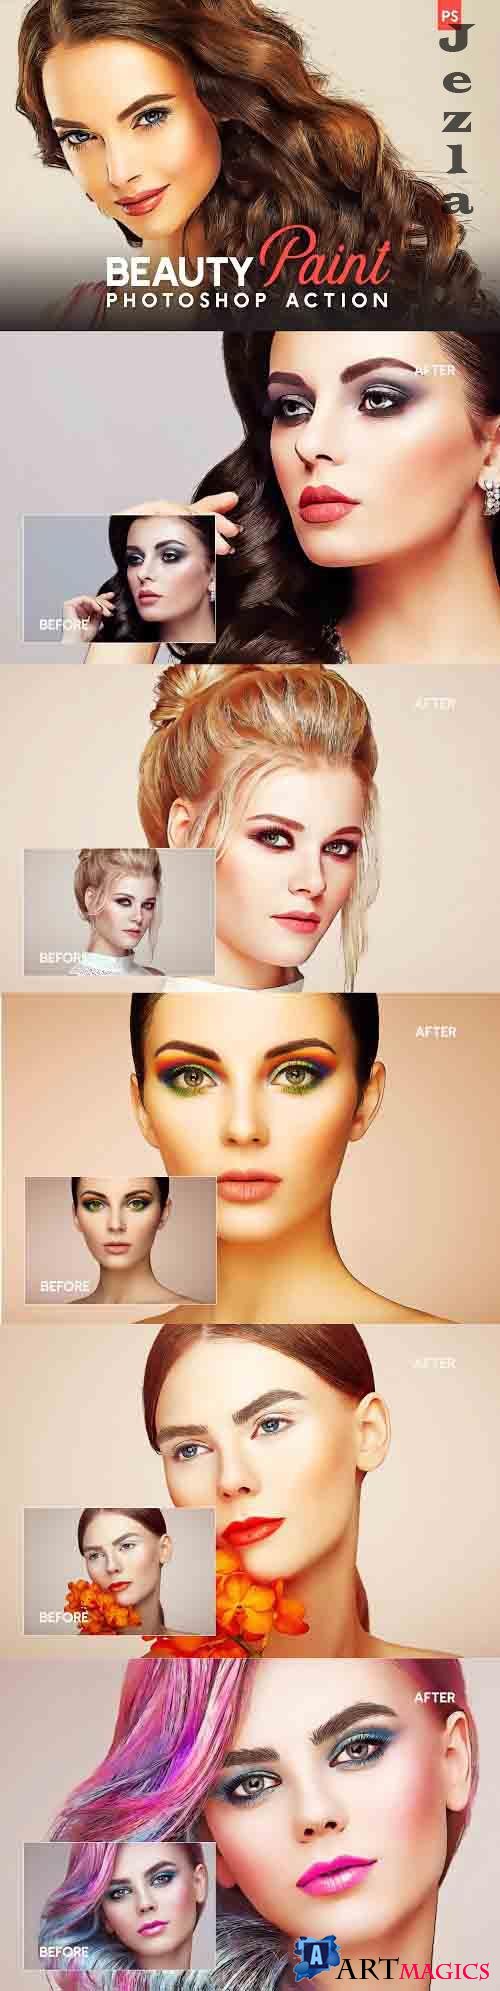 Beauty Paint Photoshop Action - 4795330